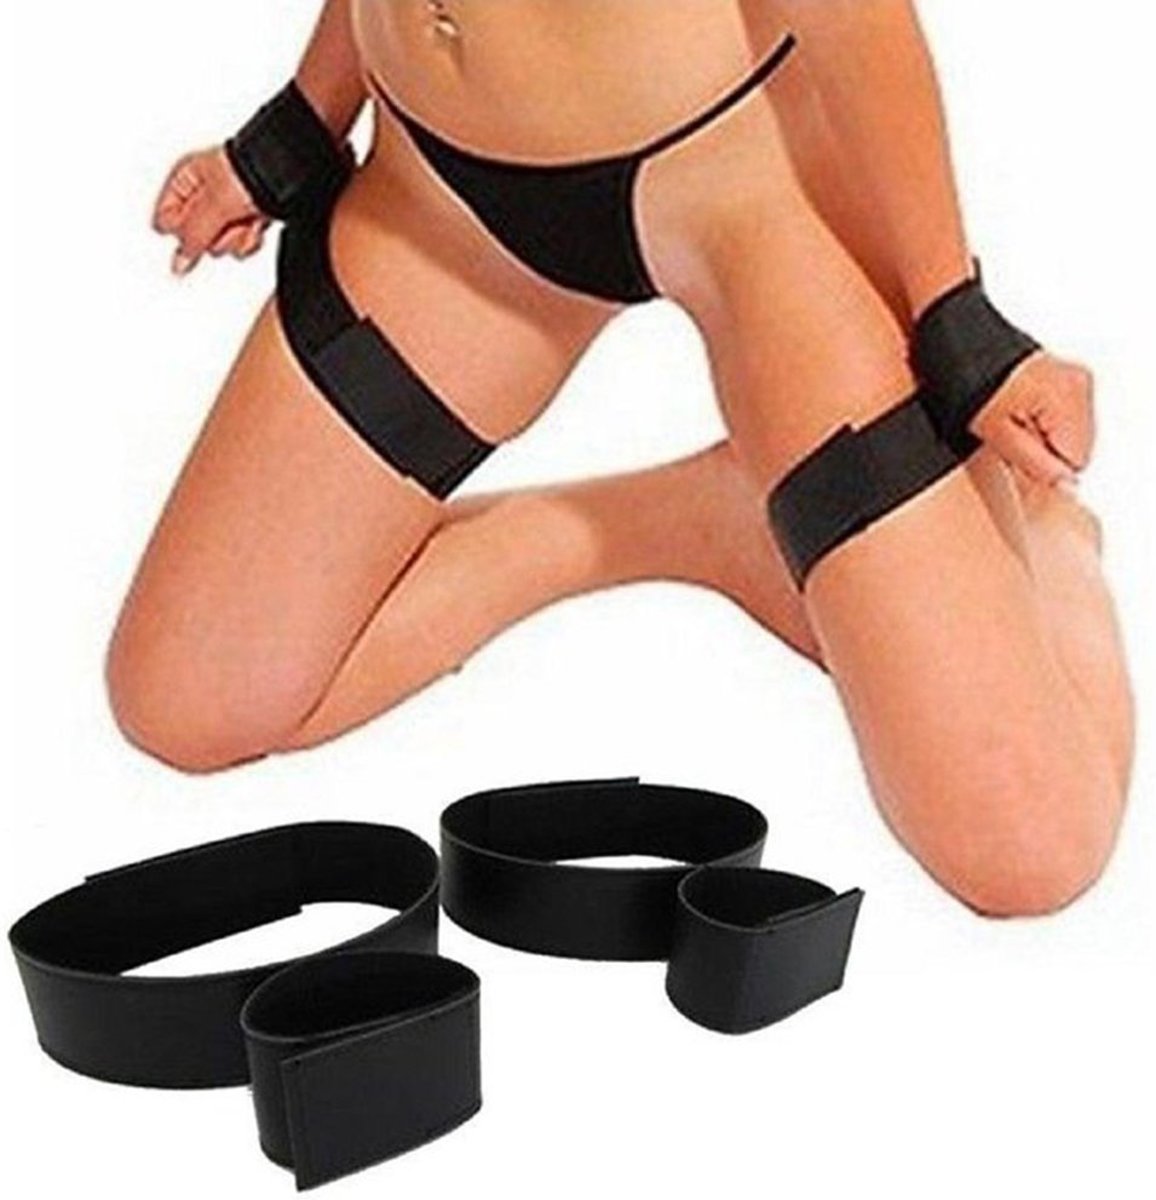 Foto van Bondage set Restraints For Wrist & Thigh